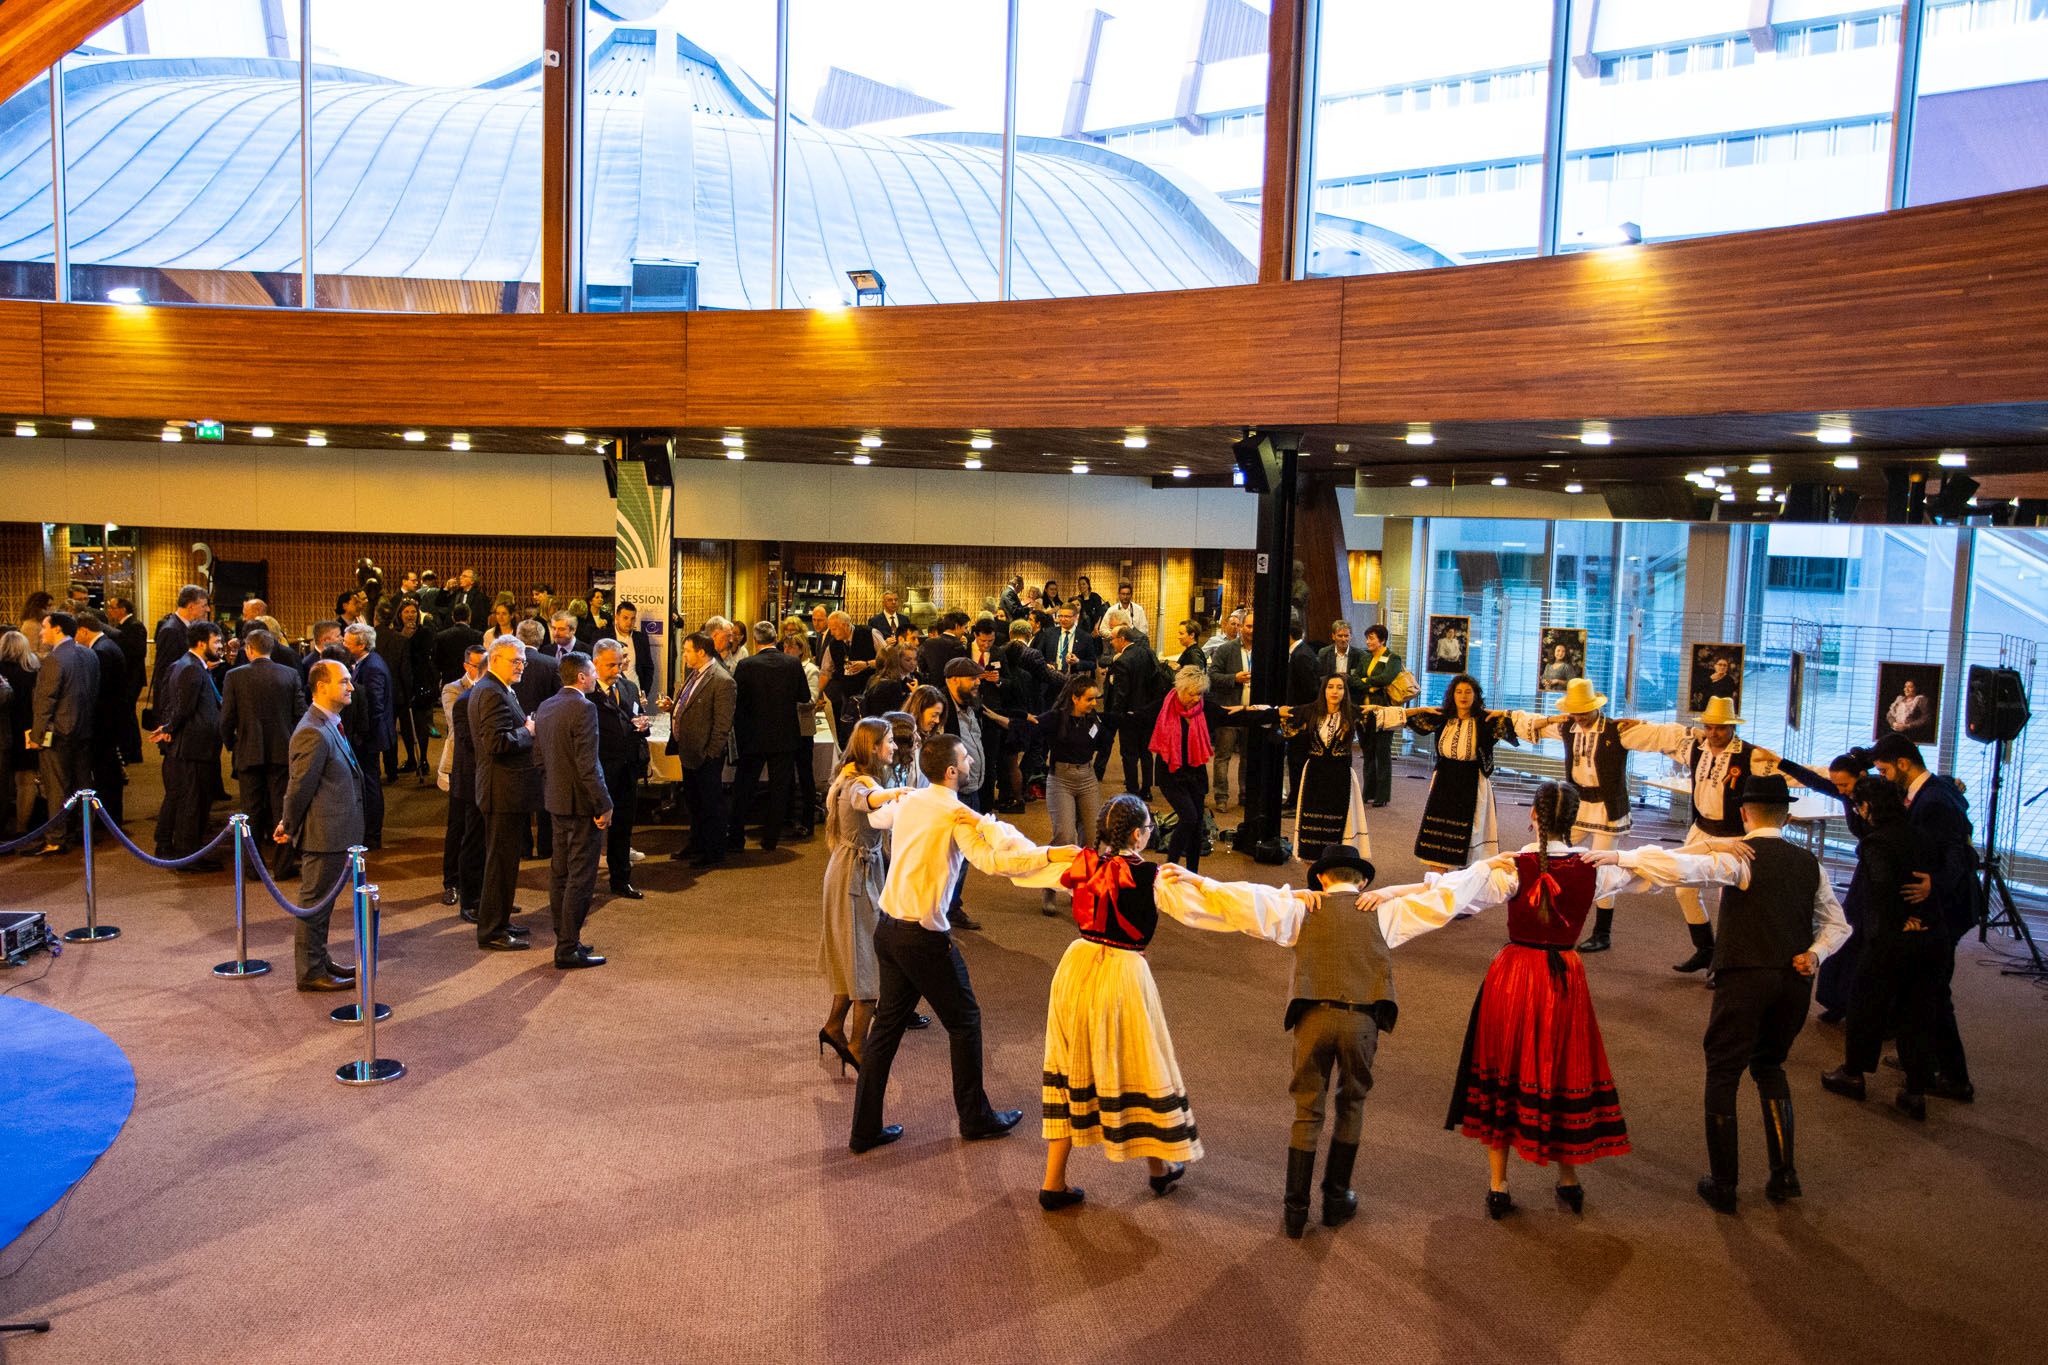 Szülőföldünk jóléte a cél - Az Európa Tanács épületében mutatkozott be Kovászna megye